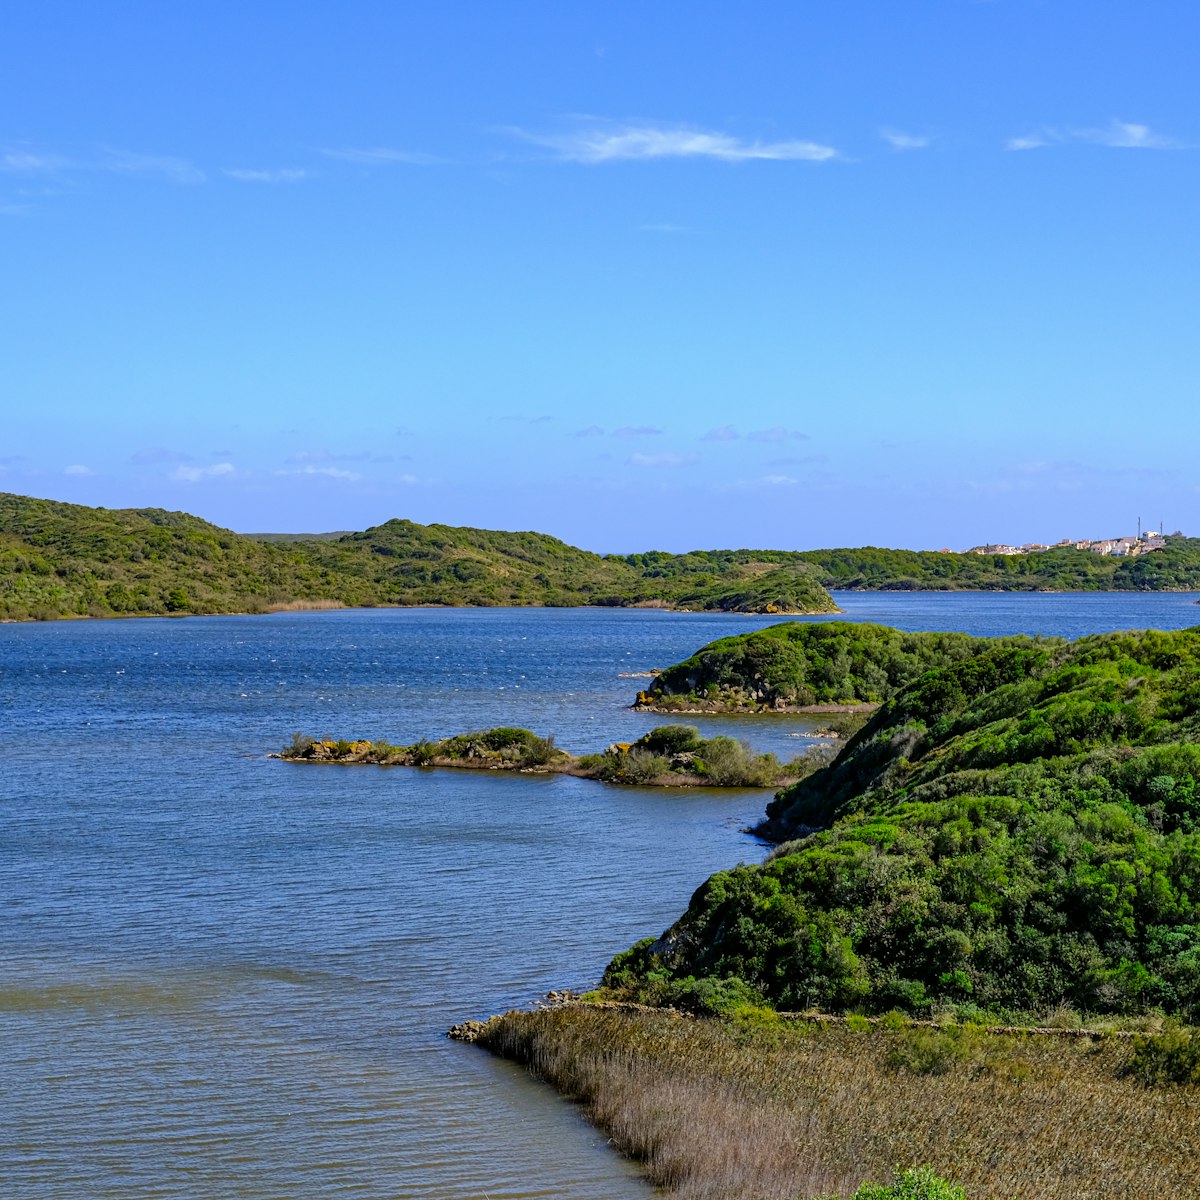 View of the lagoon, Parc Natural de s'Albufera des Grau, Menorca, Spain.